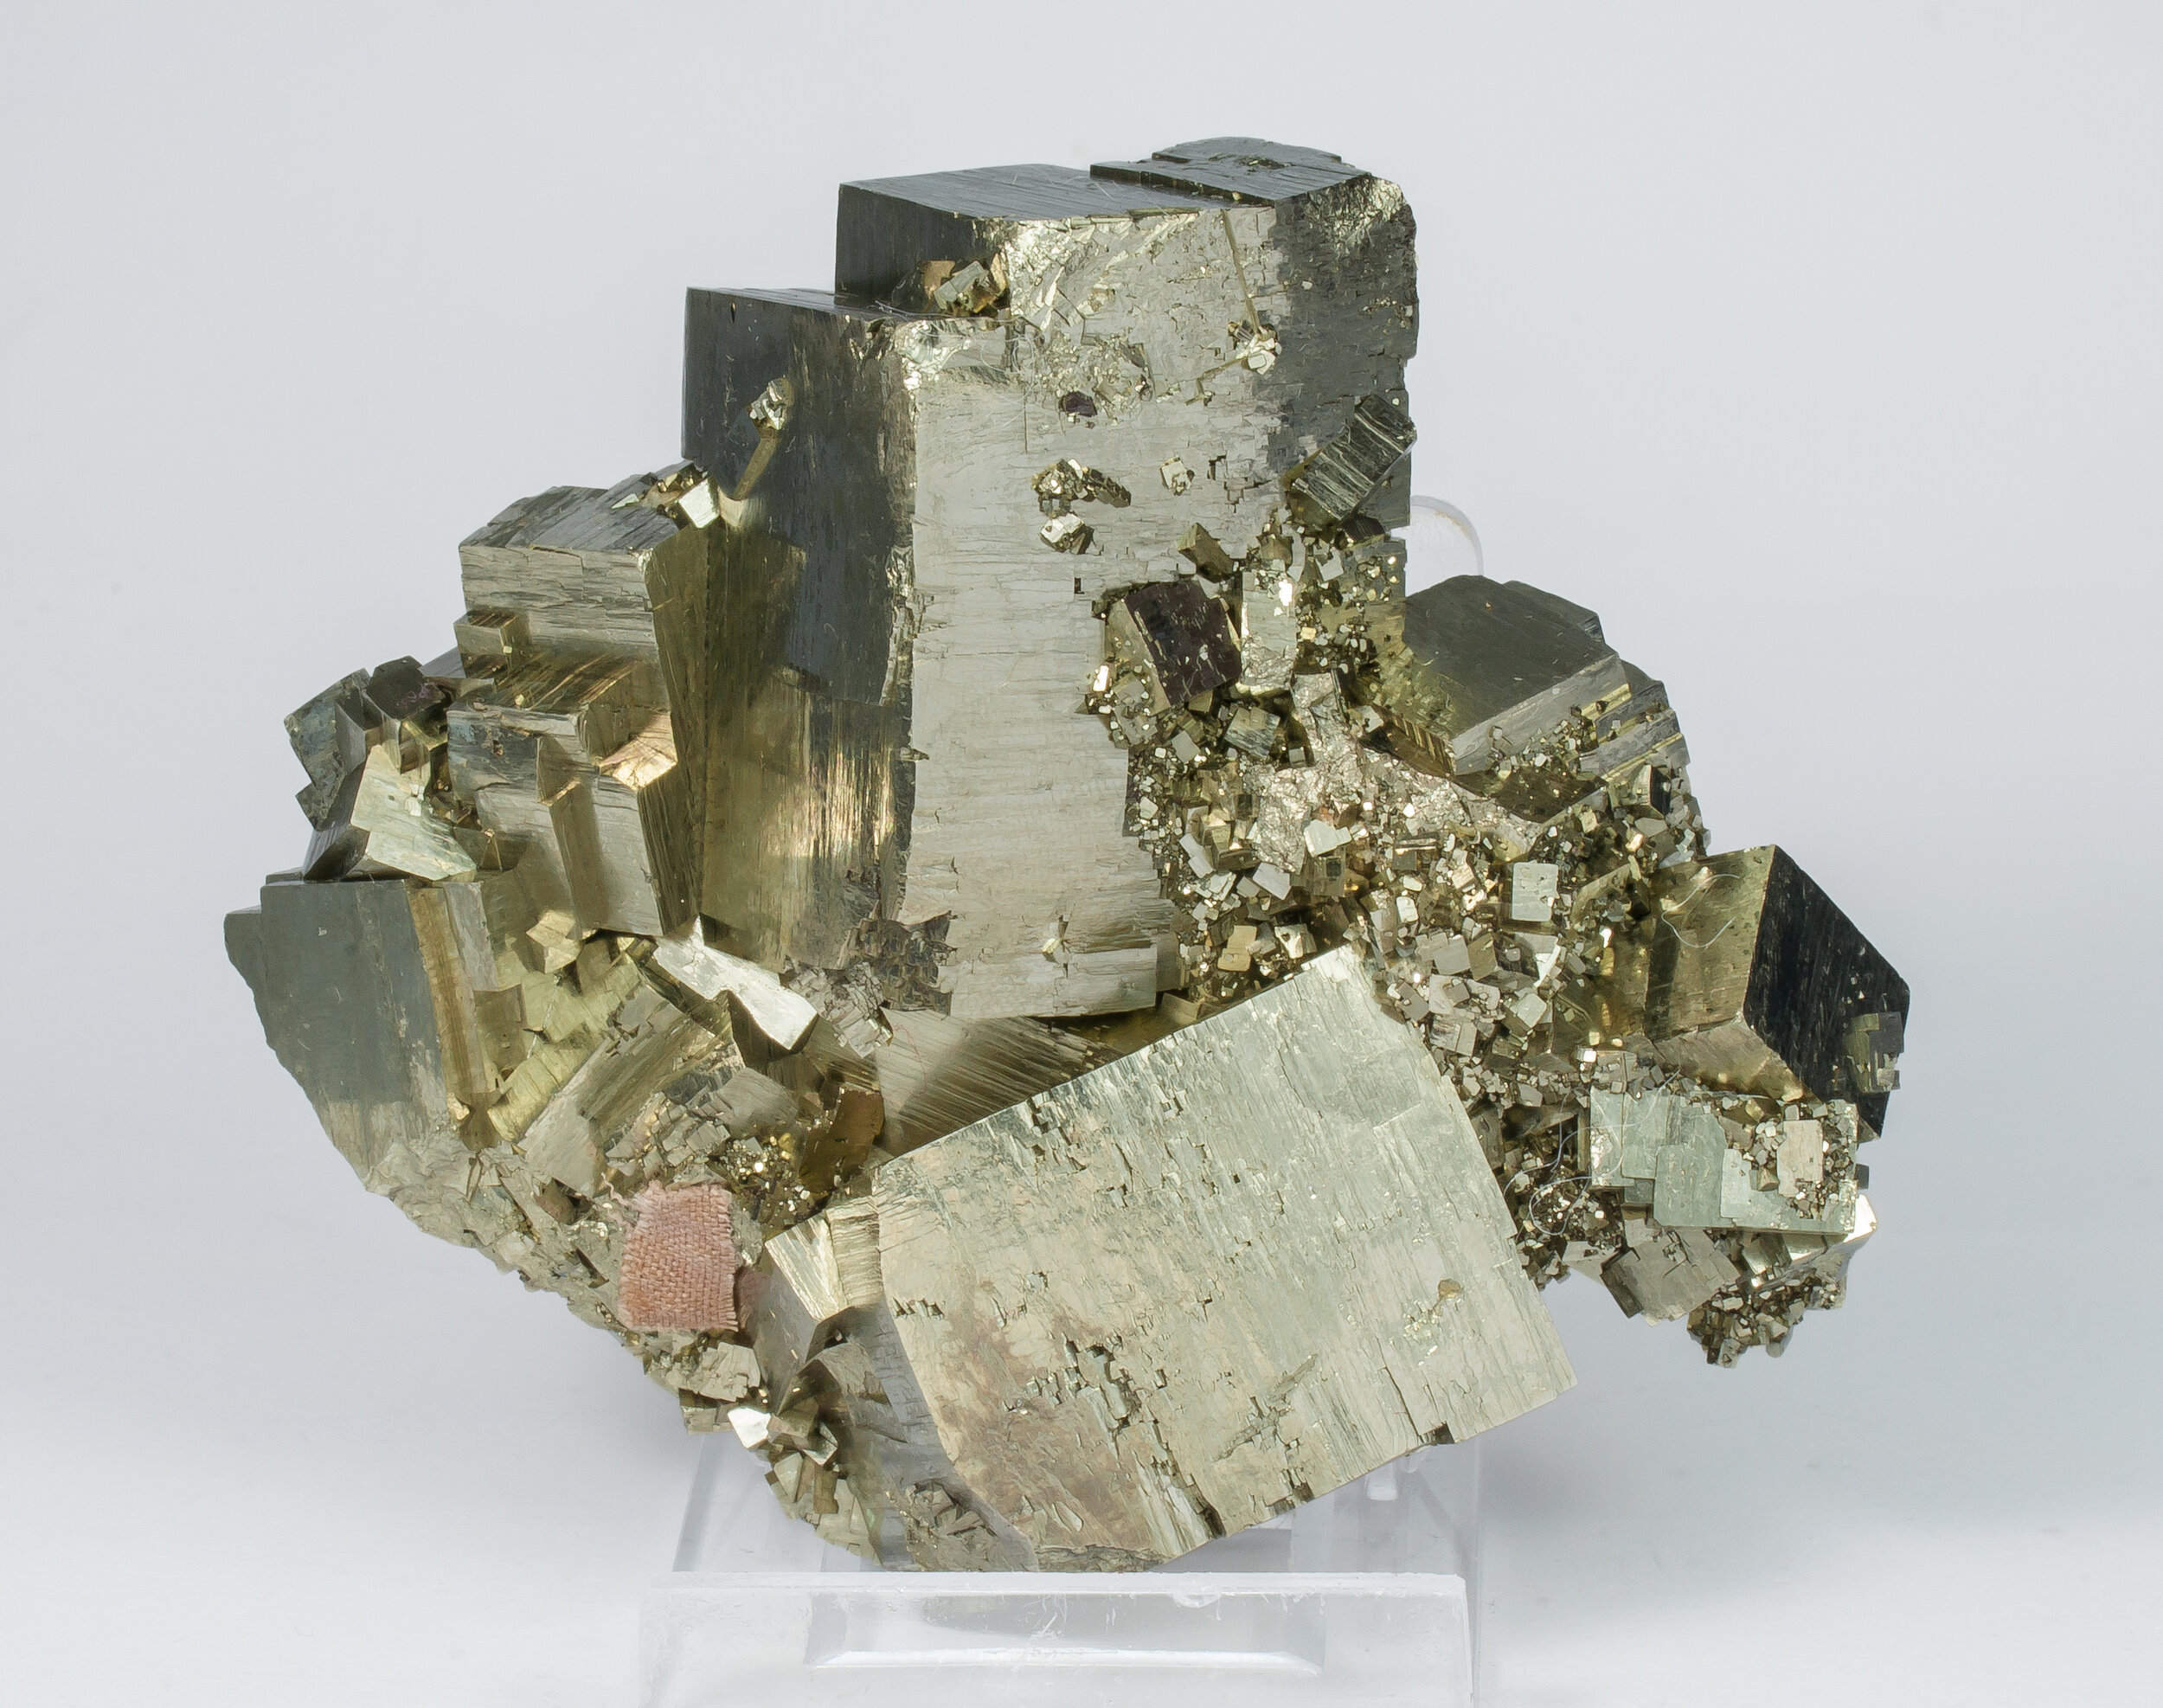 specimens/s_imagesAO1/Pyrite-MFM89AO1r.jpg